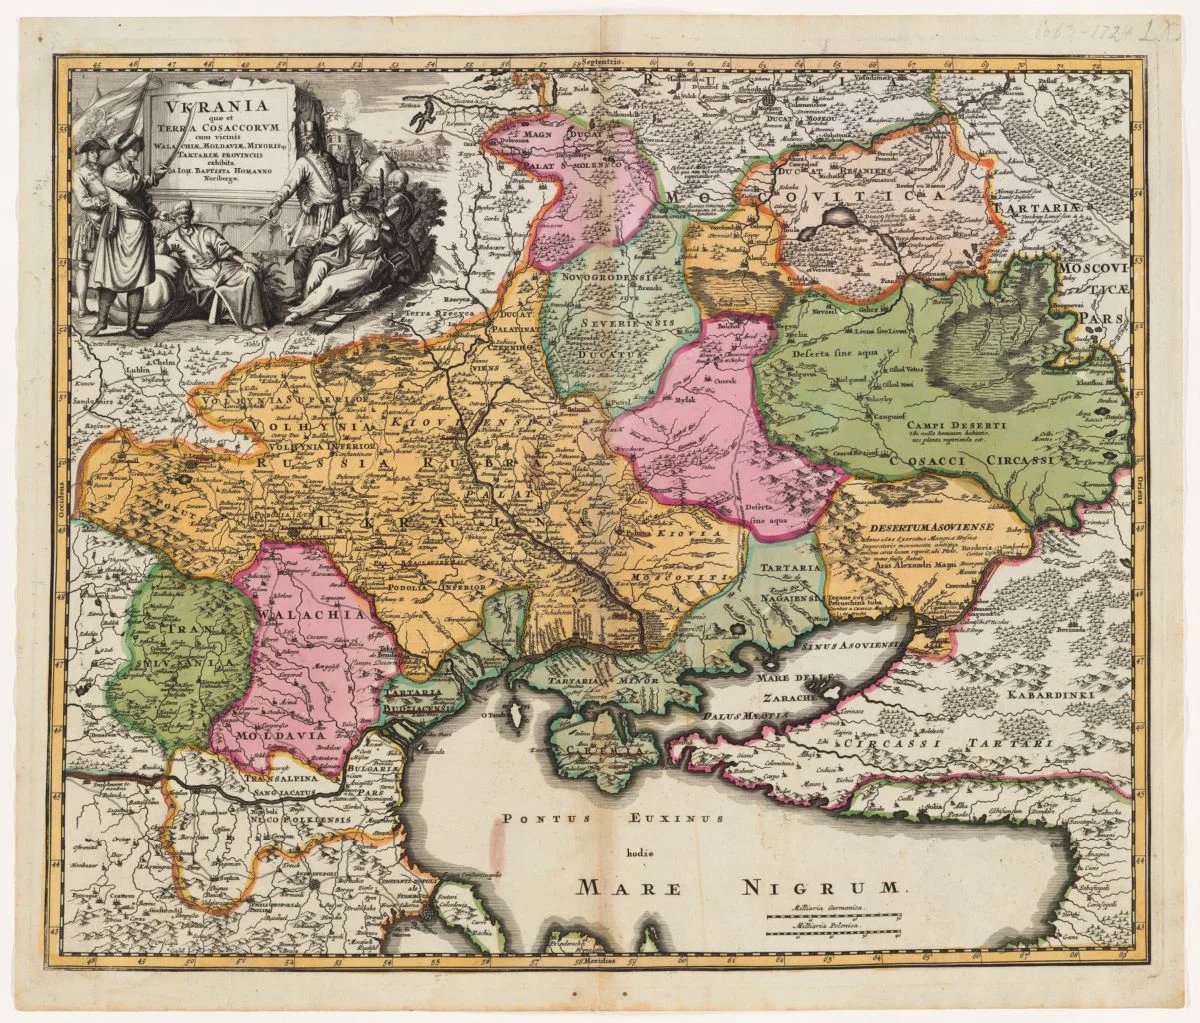 An 18th-century map published by Johann Homann. Source: curiosity.lib.harvard.edu